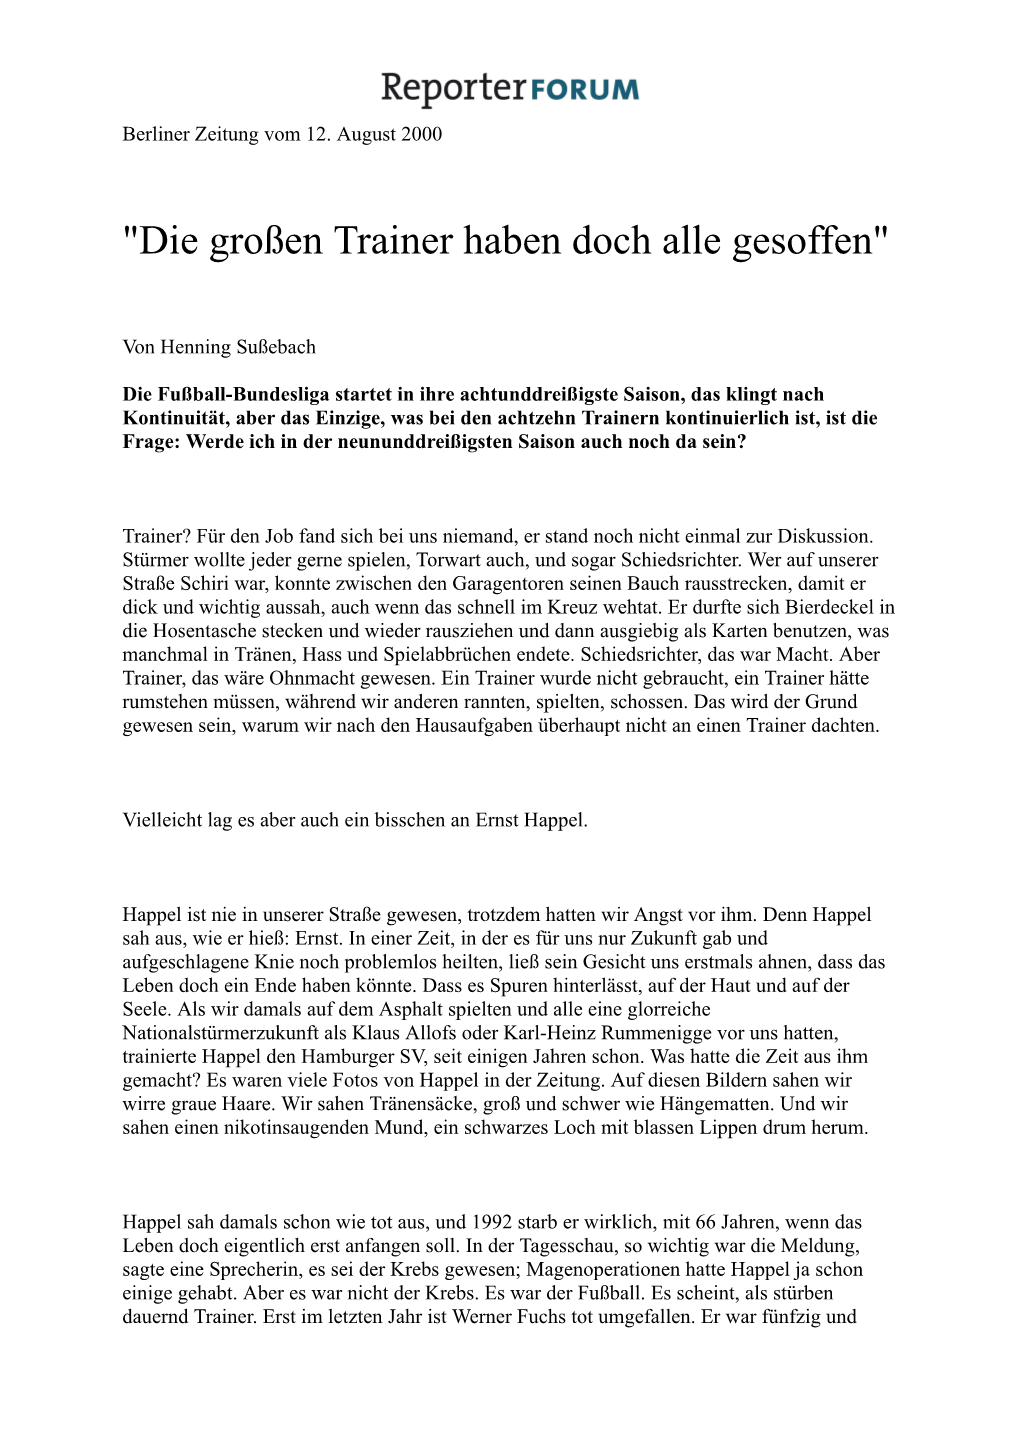 "Die Großen Trainer Haben Doch Alle Gesoffen" (PDF)